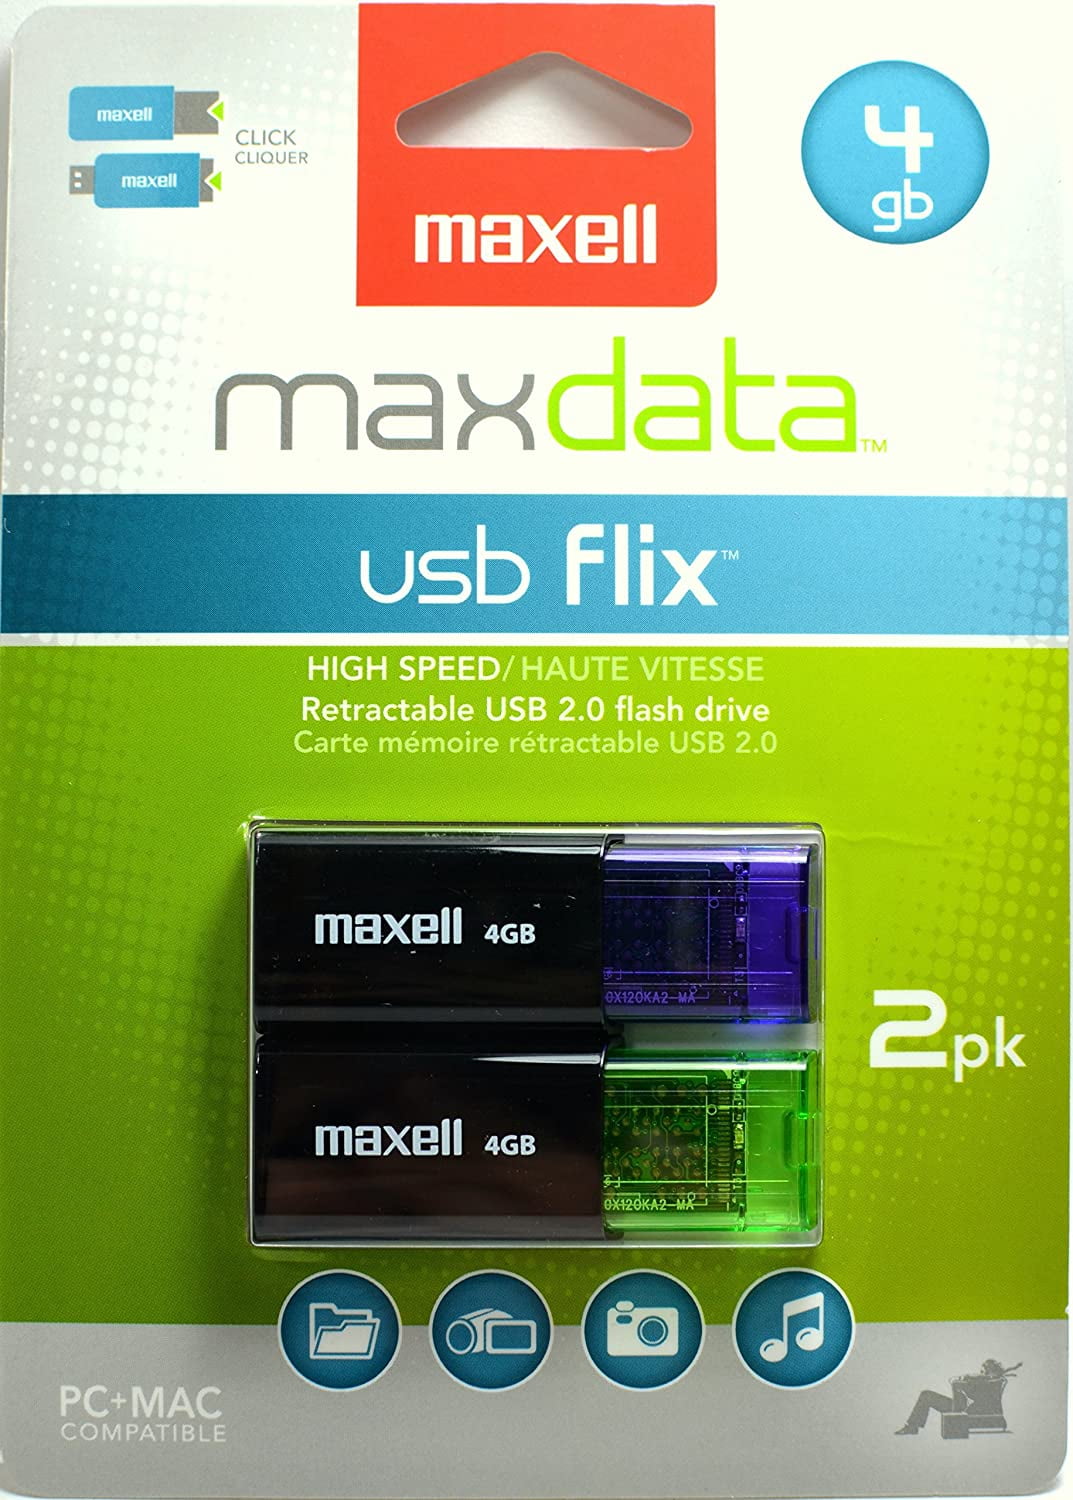 2 Pack Maxell USB Flix 4GB Retractable USB 2.0 Flash Drive 